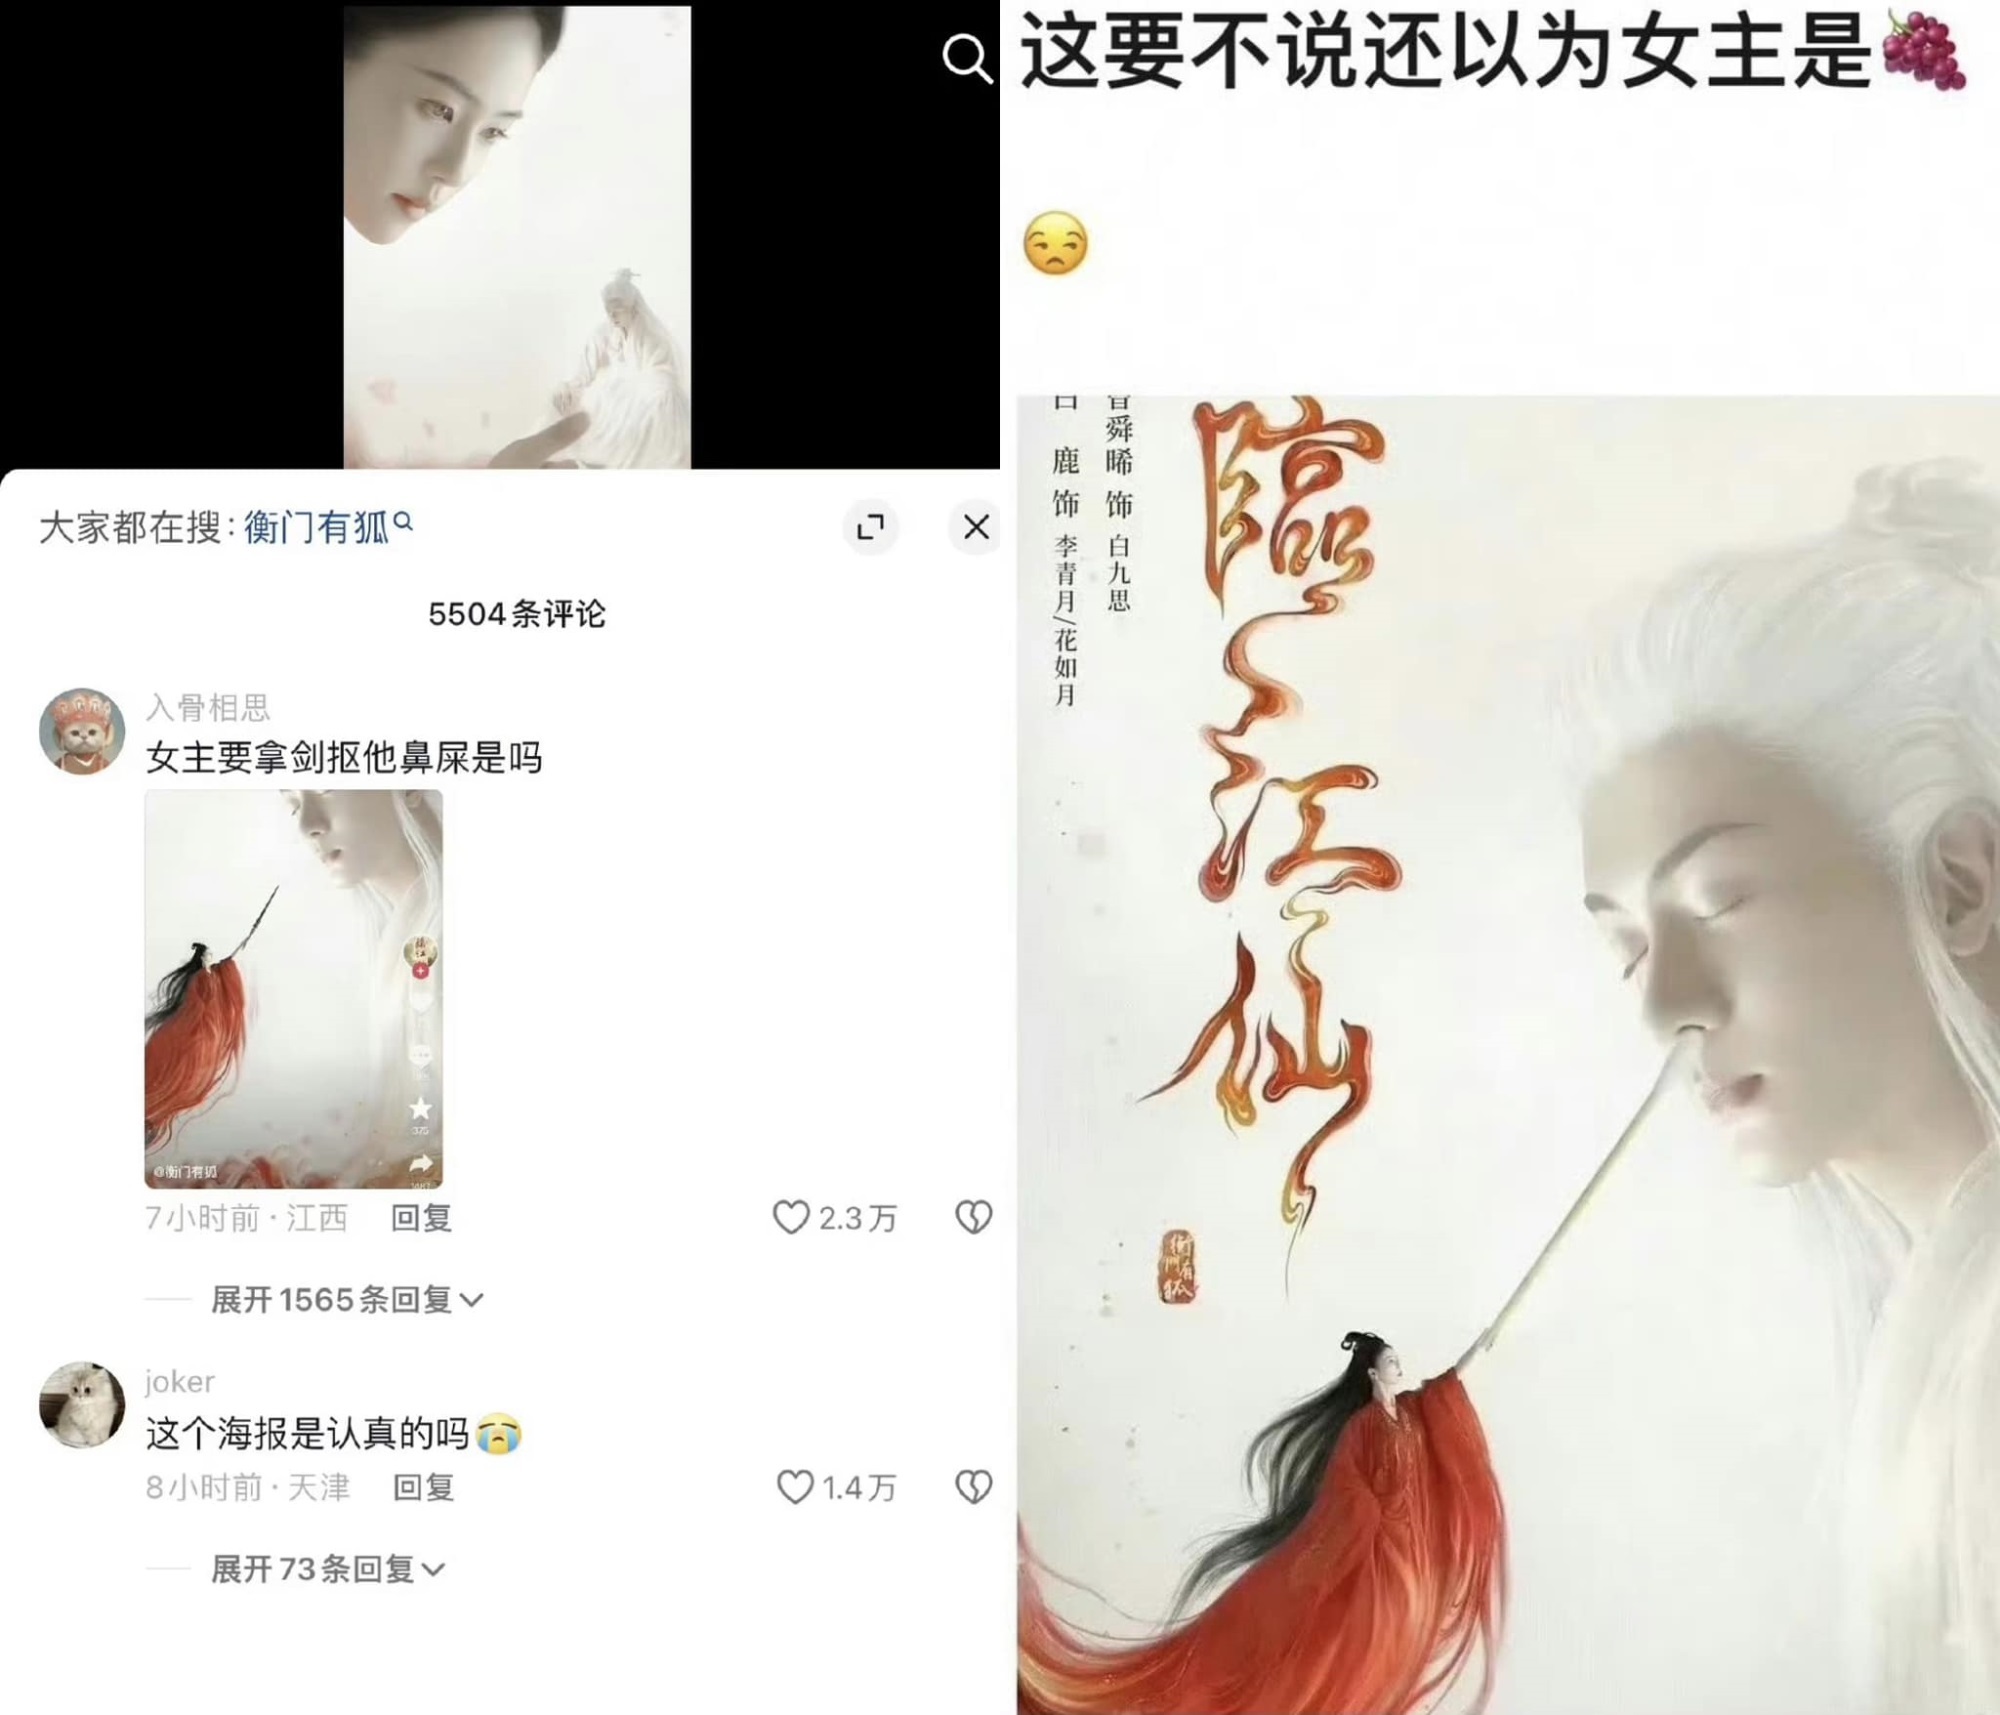 Lâm Giang Tiên của Bạch Lộc gây tranh cãi khi bị tố 'đạo nhái' poster Trầm Vụn Hương Phai của Dương Tử - Ảnh 2